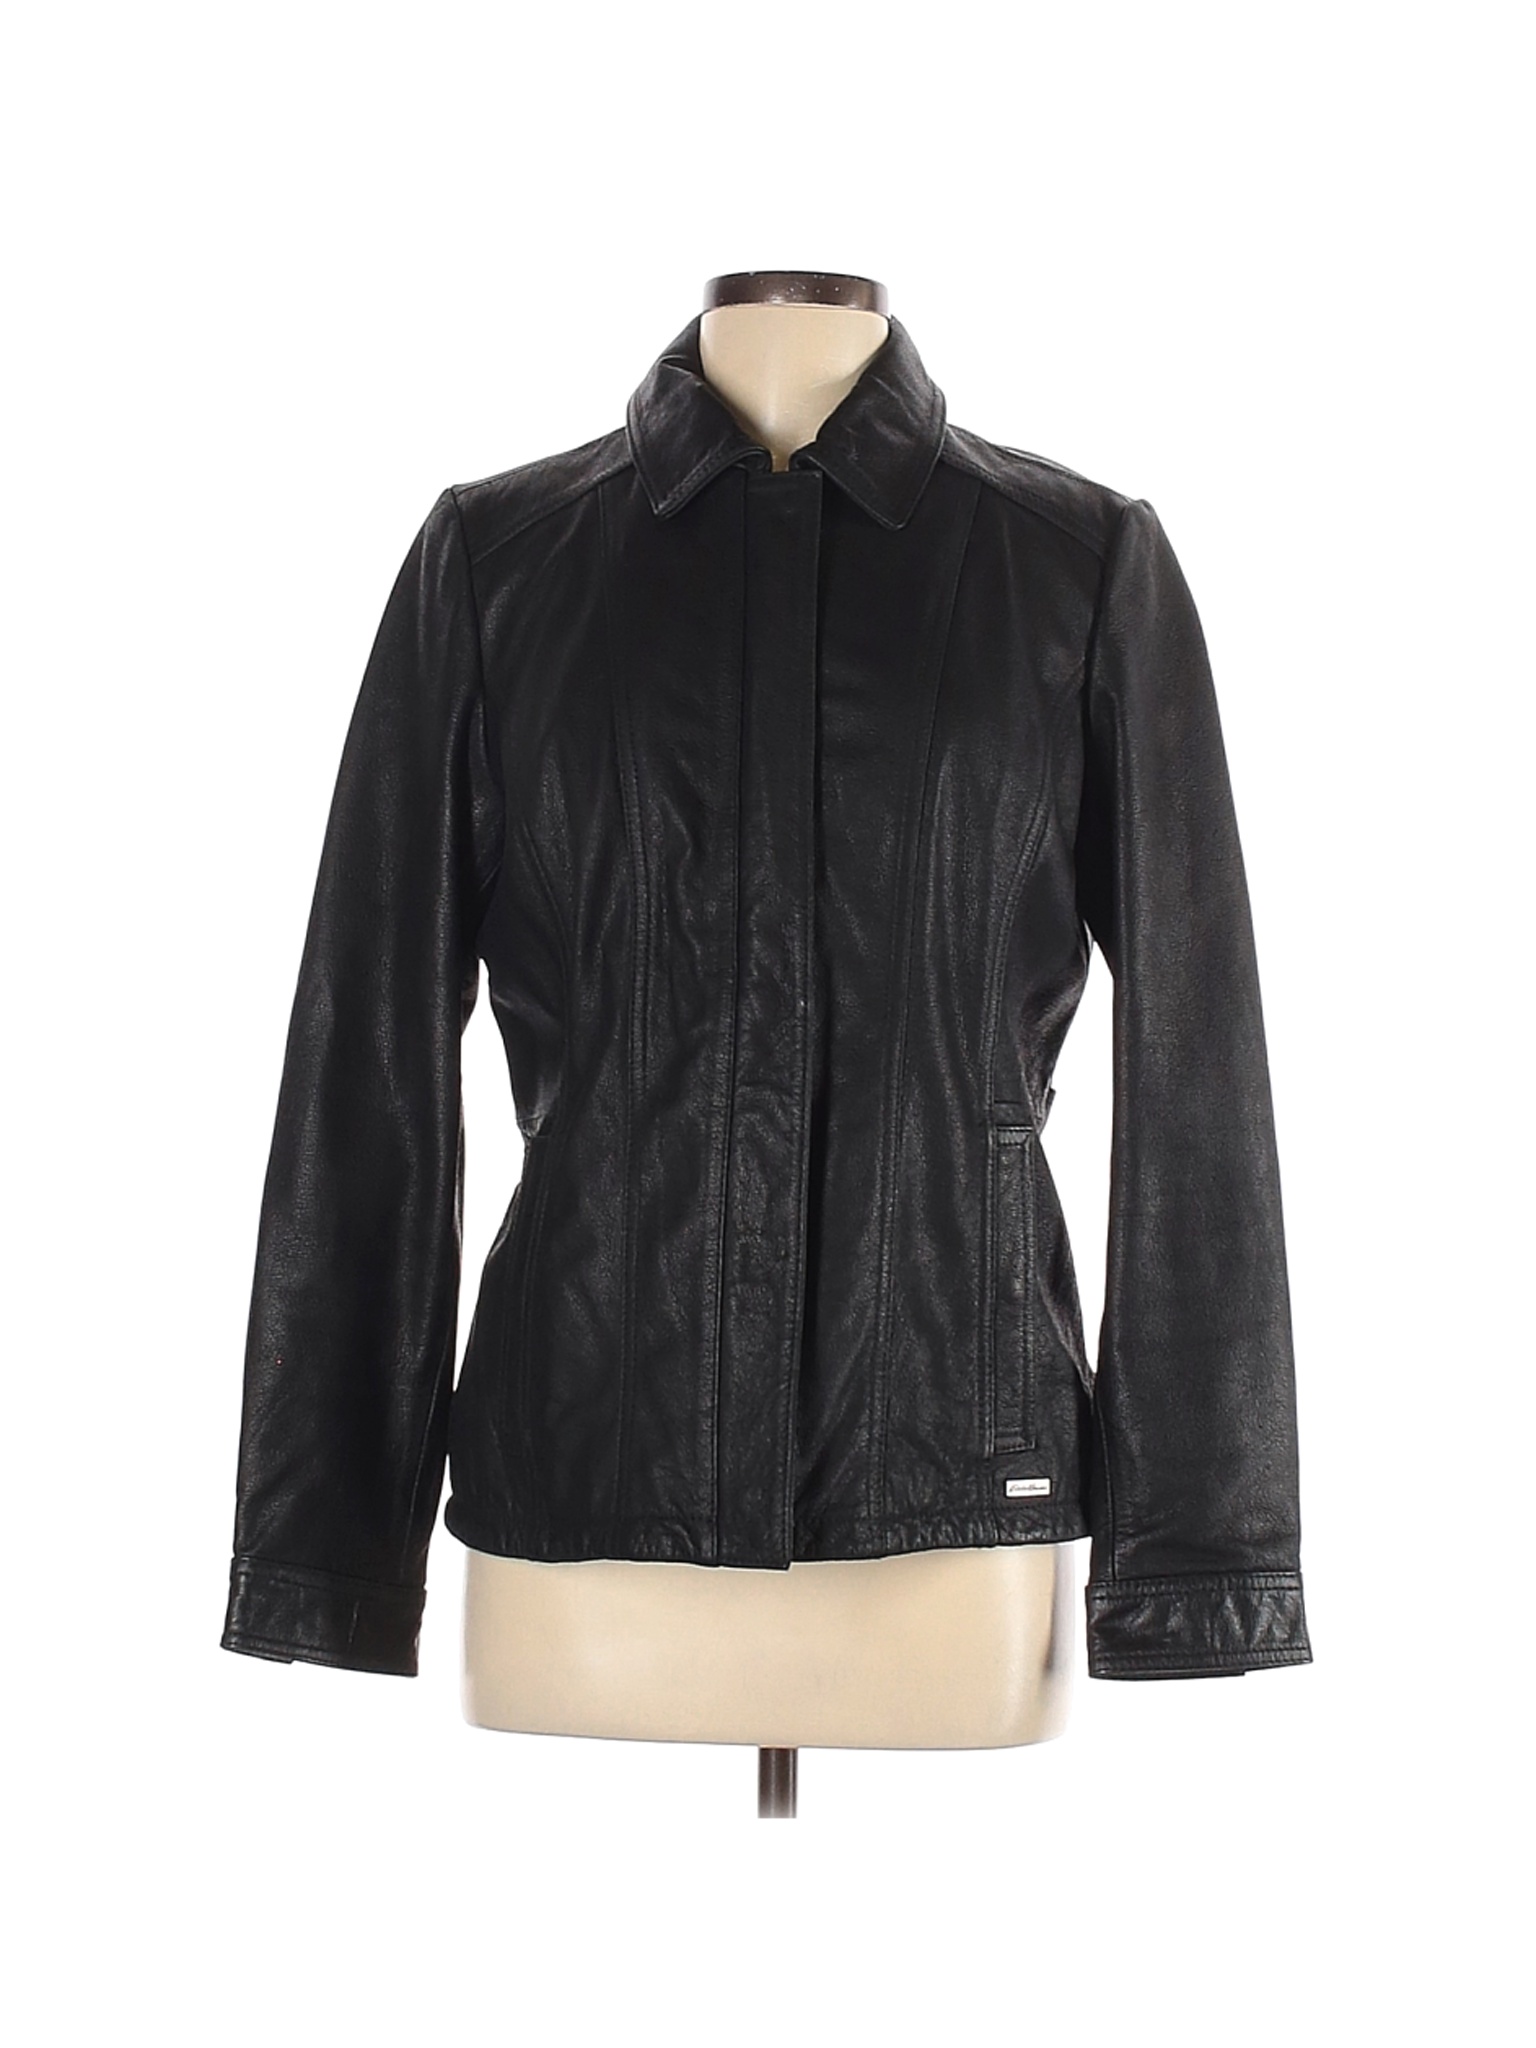 Eddie Bauer Women Black Leather Jacket M | eBay